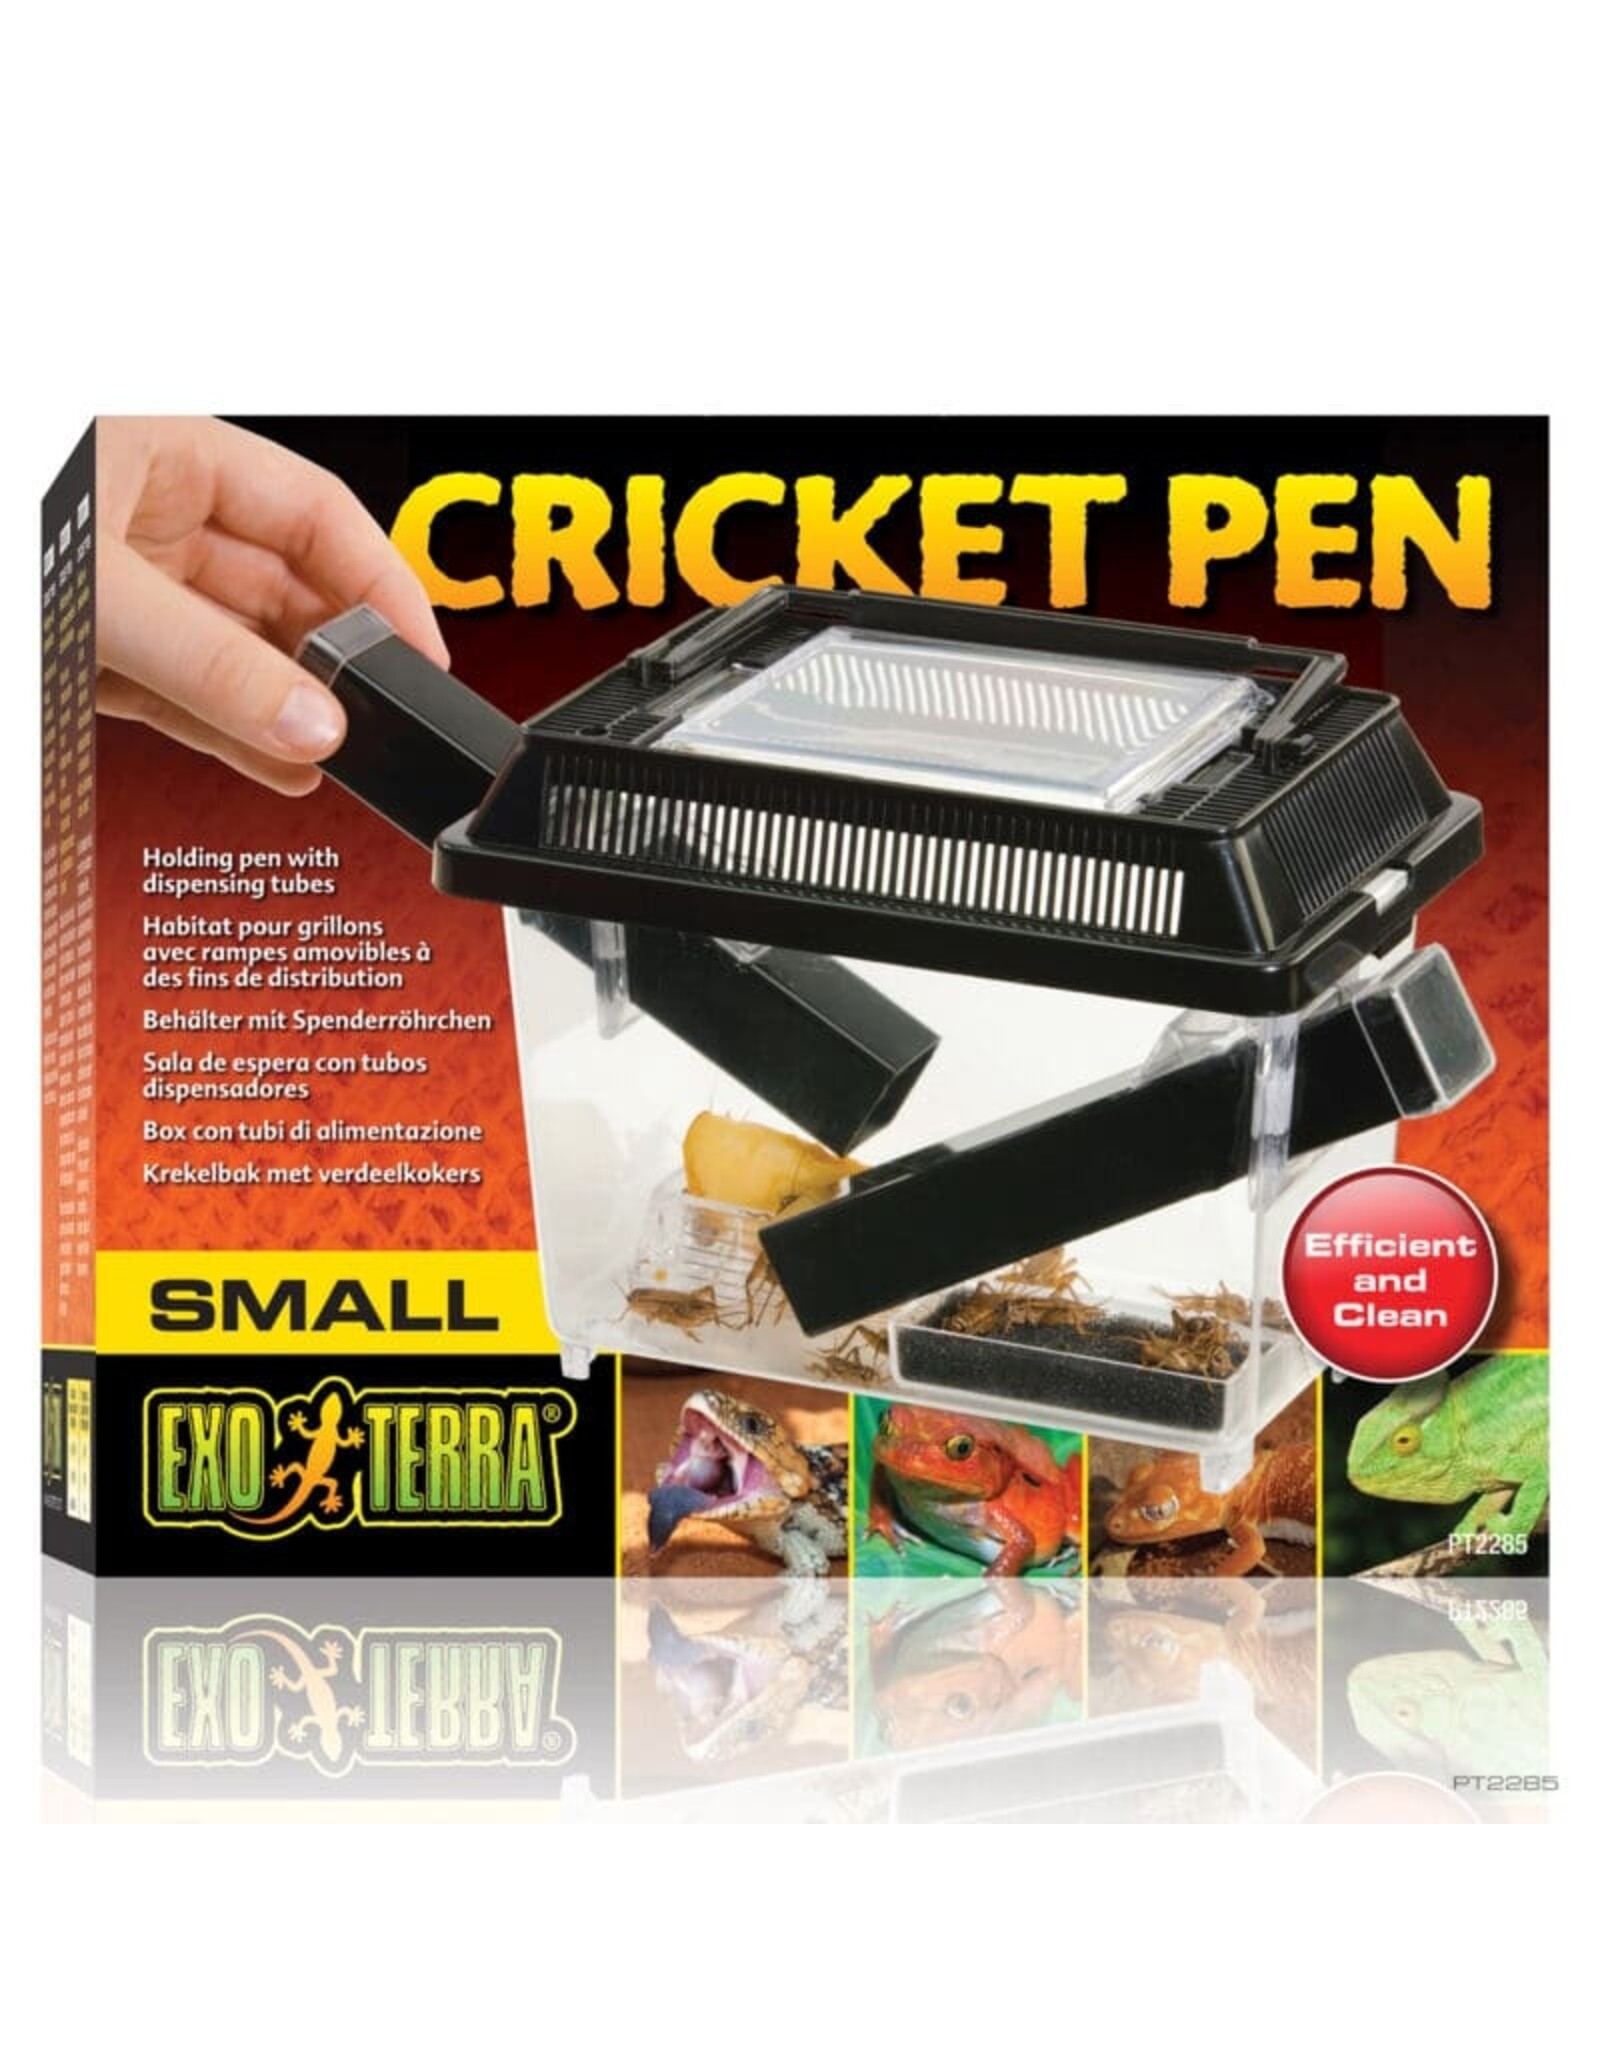 Cricket Pen Sm Exo Terra